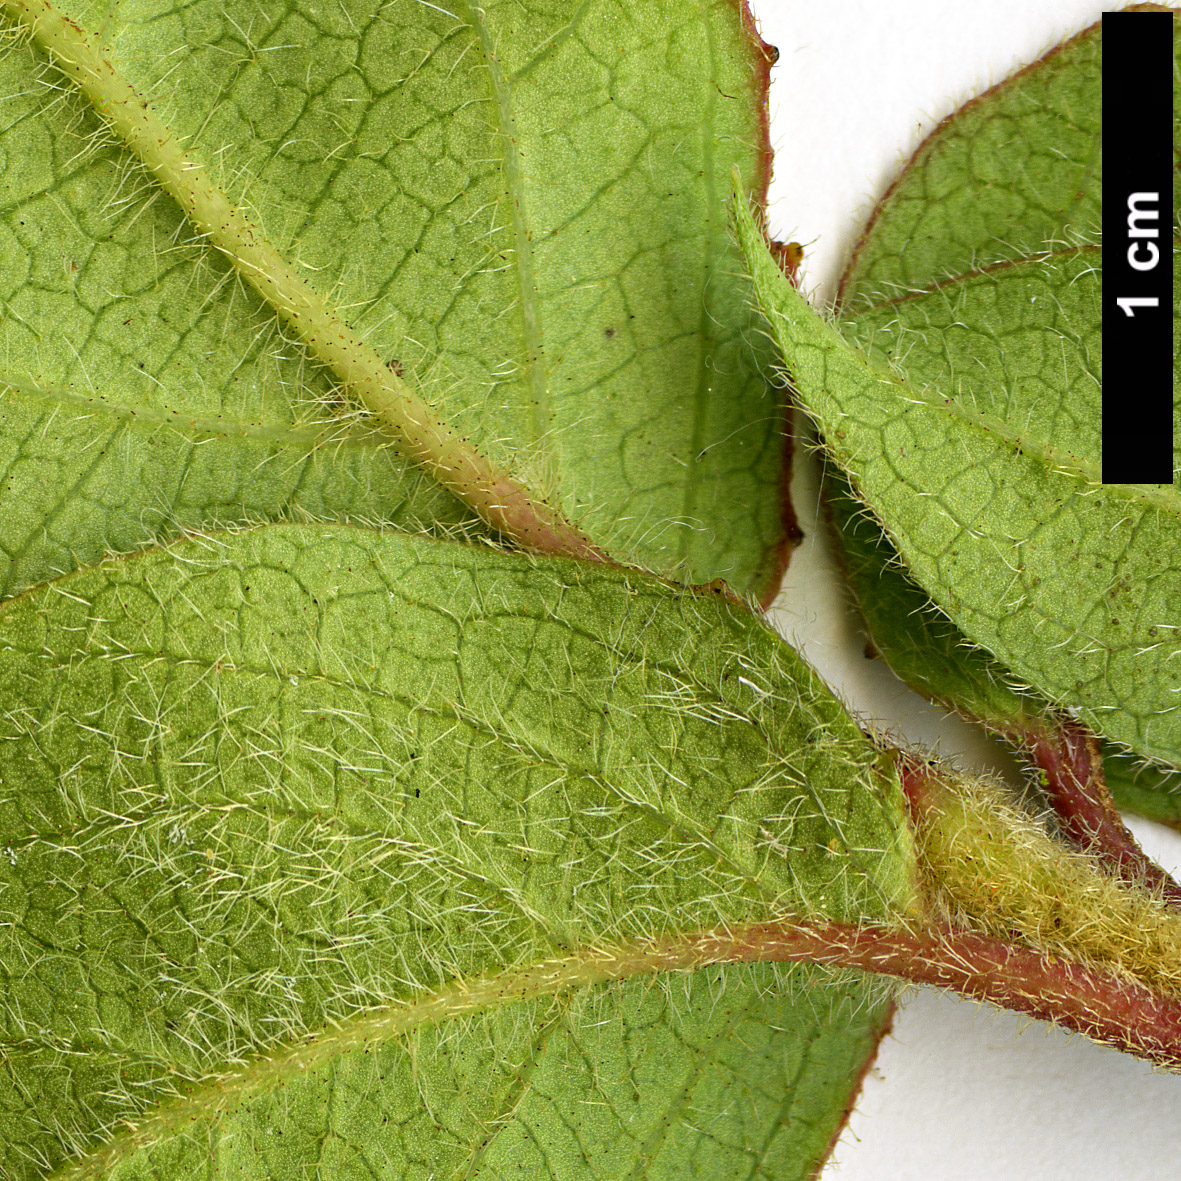 High resolution image: Family: Adoxaceae - Genus: Viburnum - Taxon: lautum